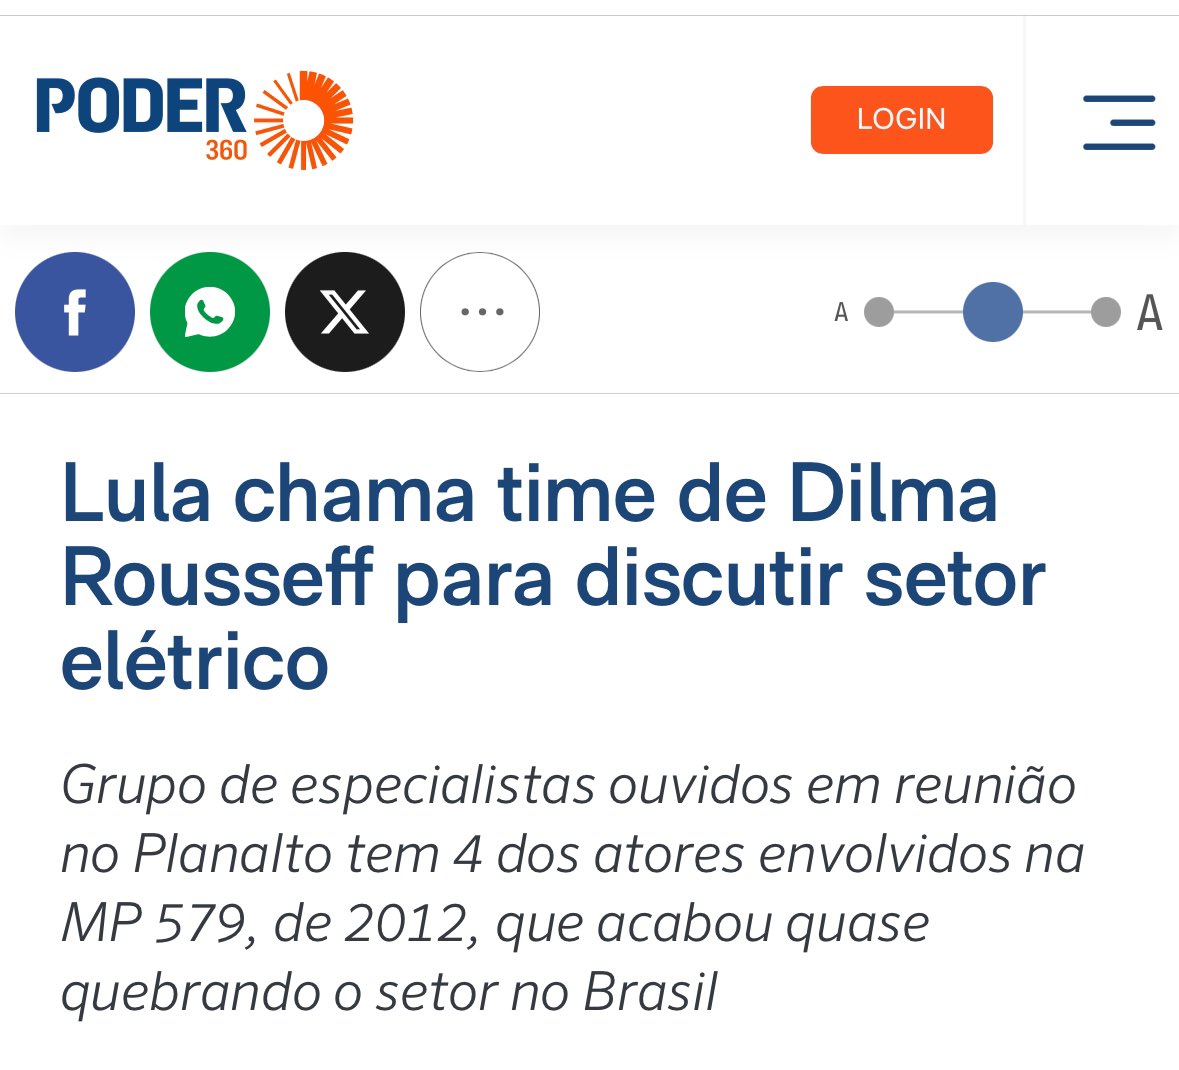 Sem rumo até agora, o governo Lula finalmente encontrou uma direção: chamou Dilma de volta! Triplicou a meta! Vai dar PT de novo: Perda Total!